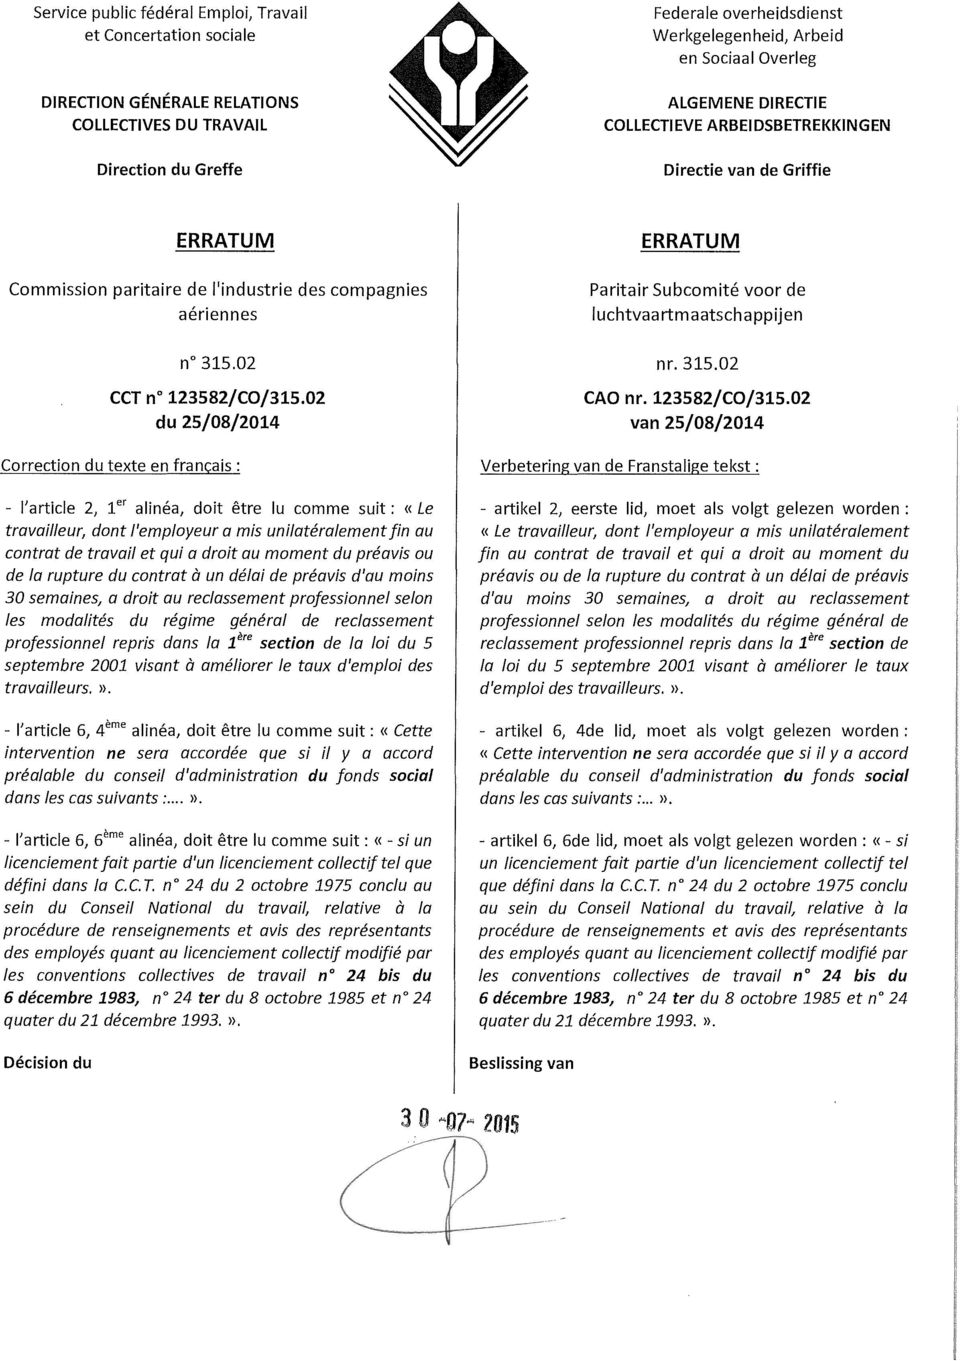 02 du 25/08/2014 Paritair Subcomité voor de luchtvaartmaatschappijen nr.315.02 CAOnr. 123582/CO/315.